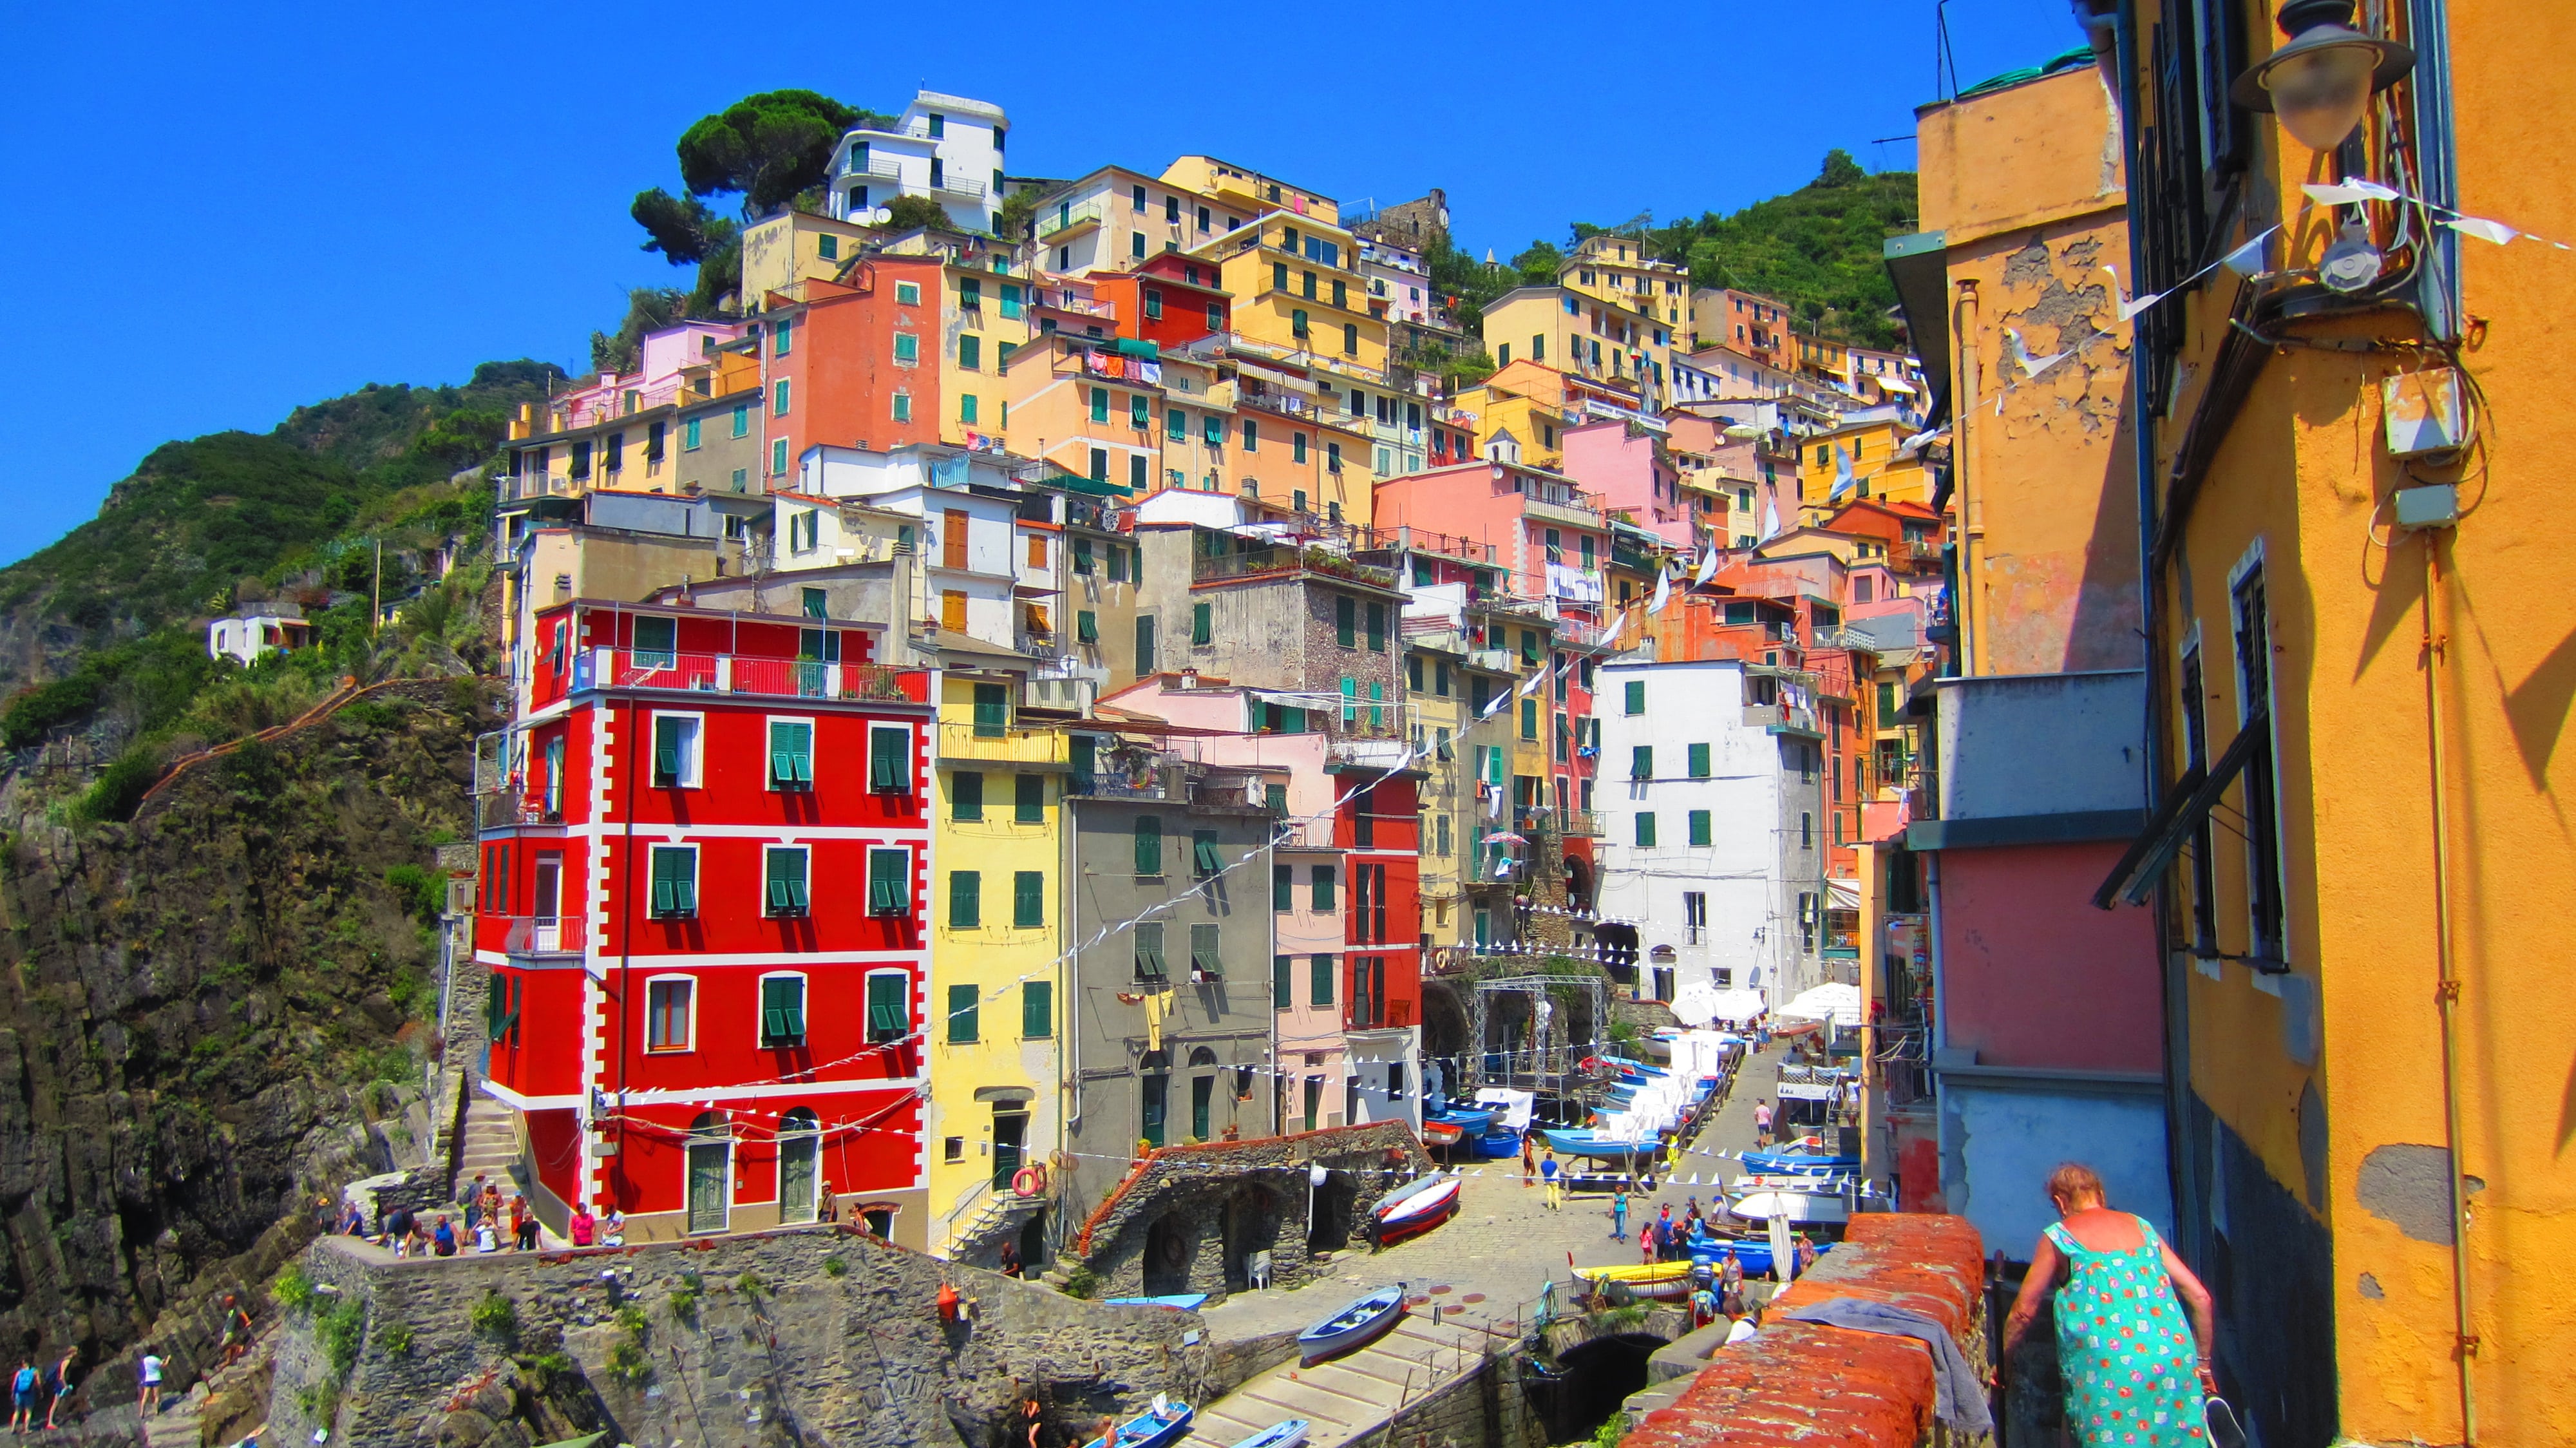 Colorful tiered architecture in Riomaggiore, Cinque Terre